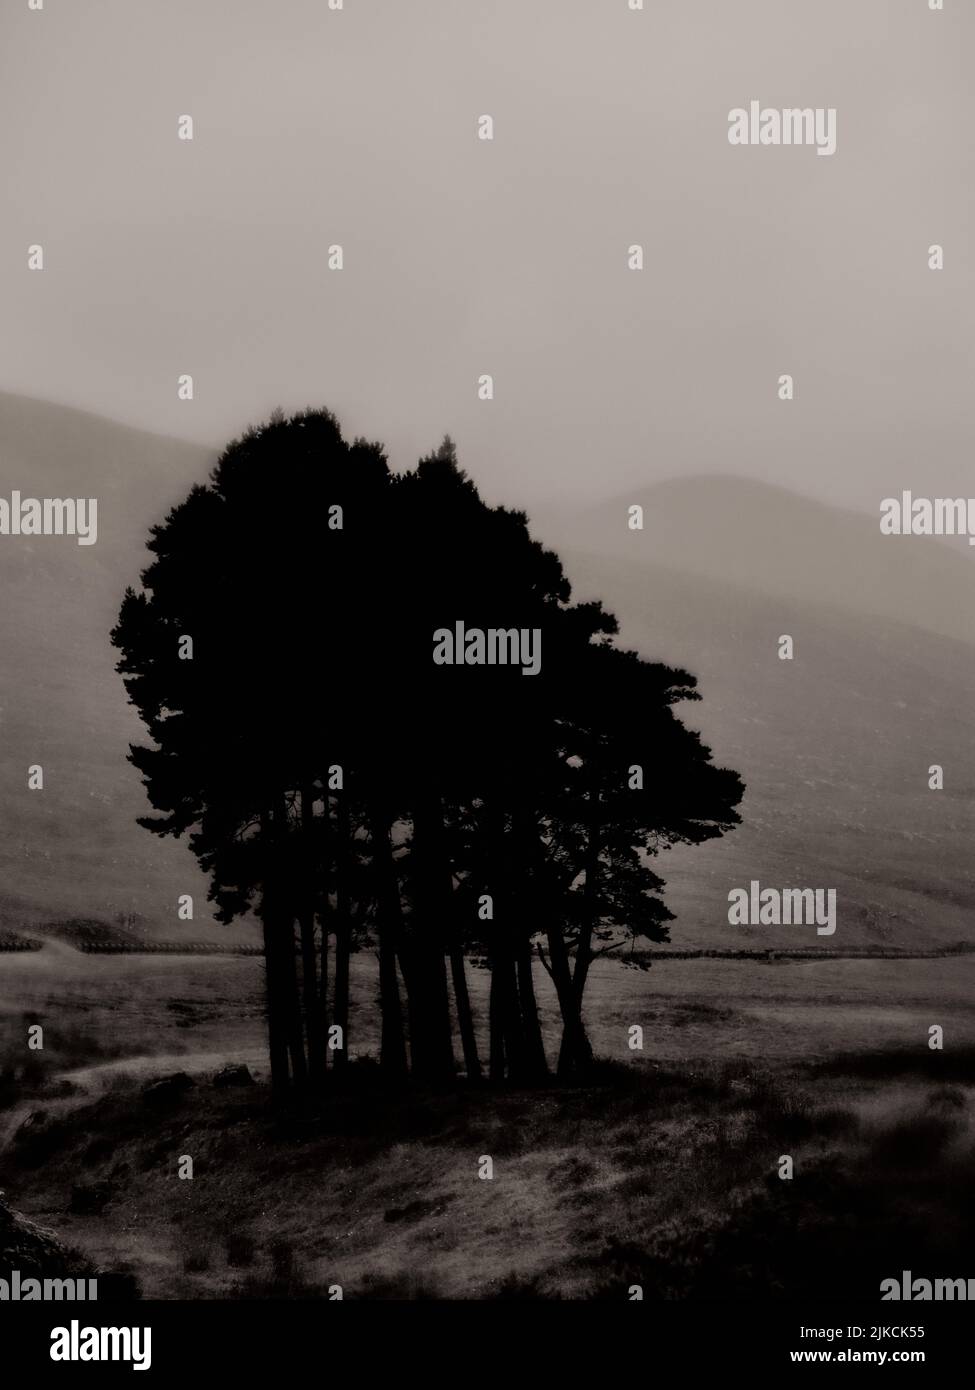 Ein minimalistischer dunkler, geheimnisvoller, verschwommener Baumregen und eine Berglandschaft - s/w-Grafik im lith-Look ein stimmungsvoller Gothic Buchcover-Hintergrund Stockfoto